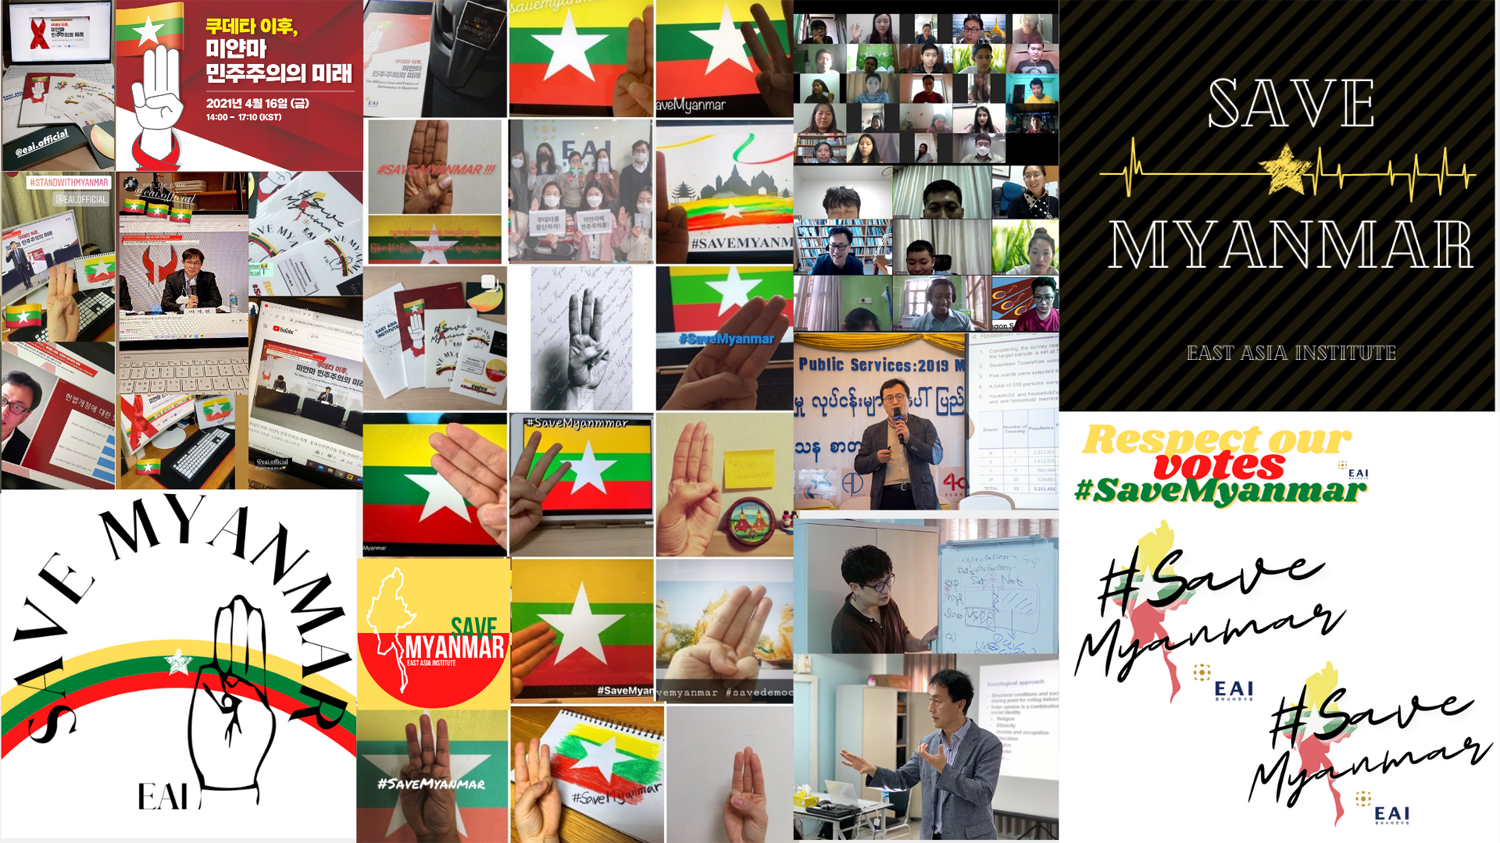 [EAI 미얀마 특별 논평] ⑤ 민주주의를 향한 미얀마 시민사회의 중단 없는 투쟁: EAI의 미얀마 협력 사업에서의 소회